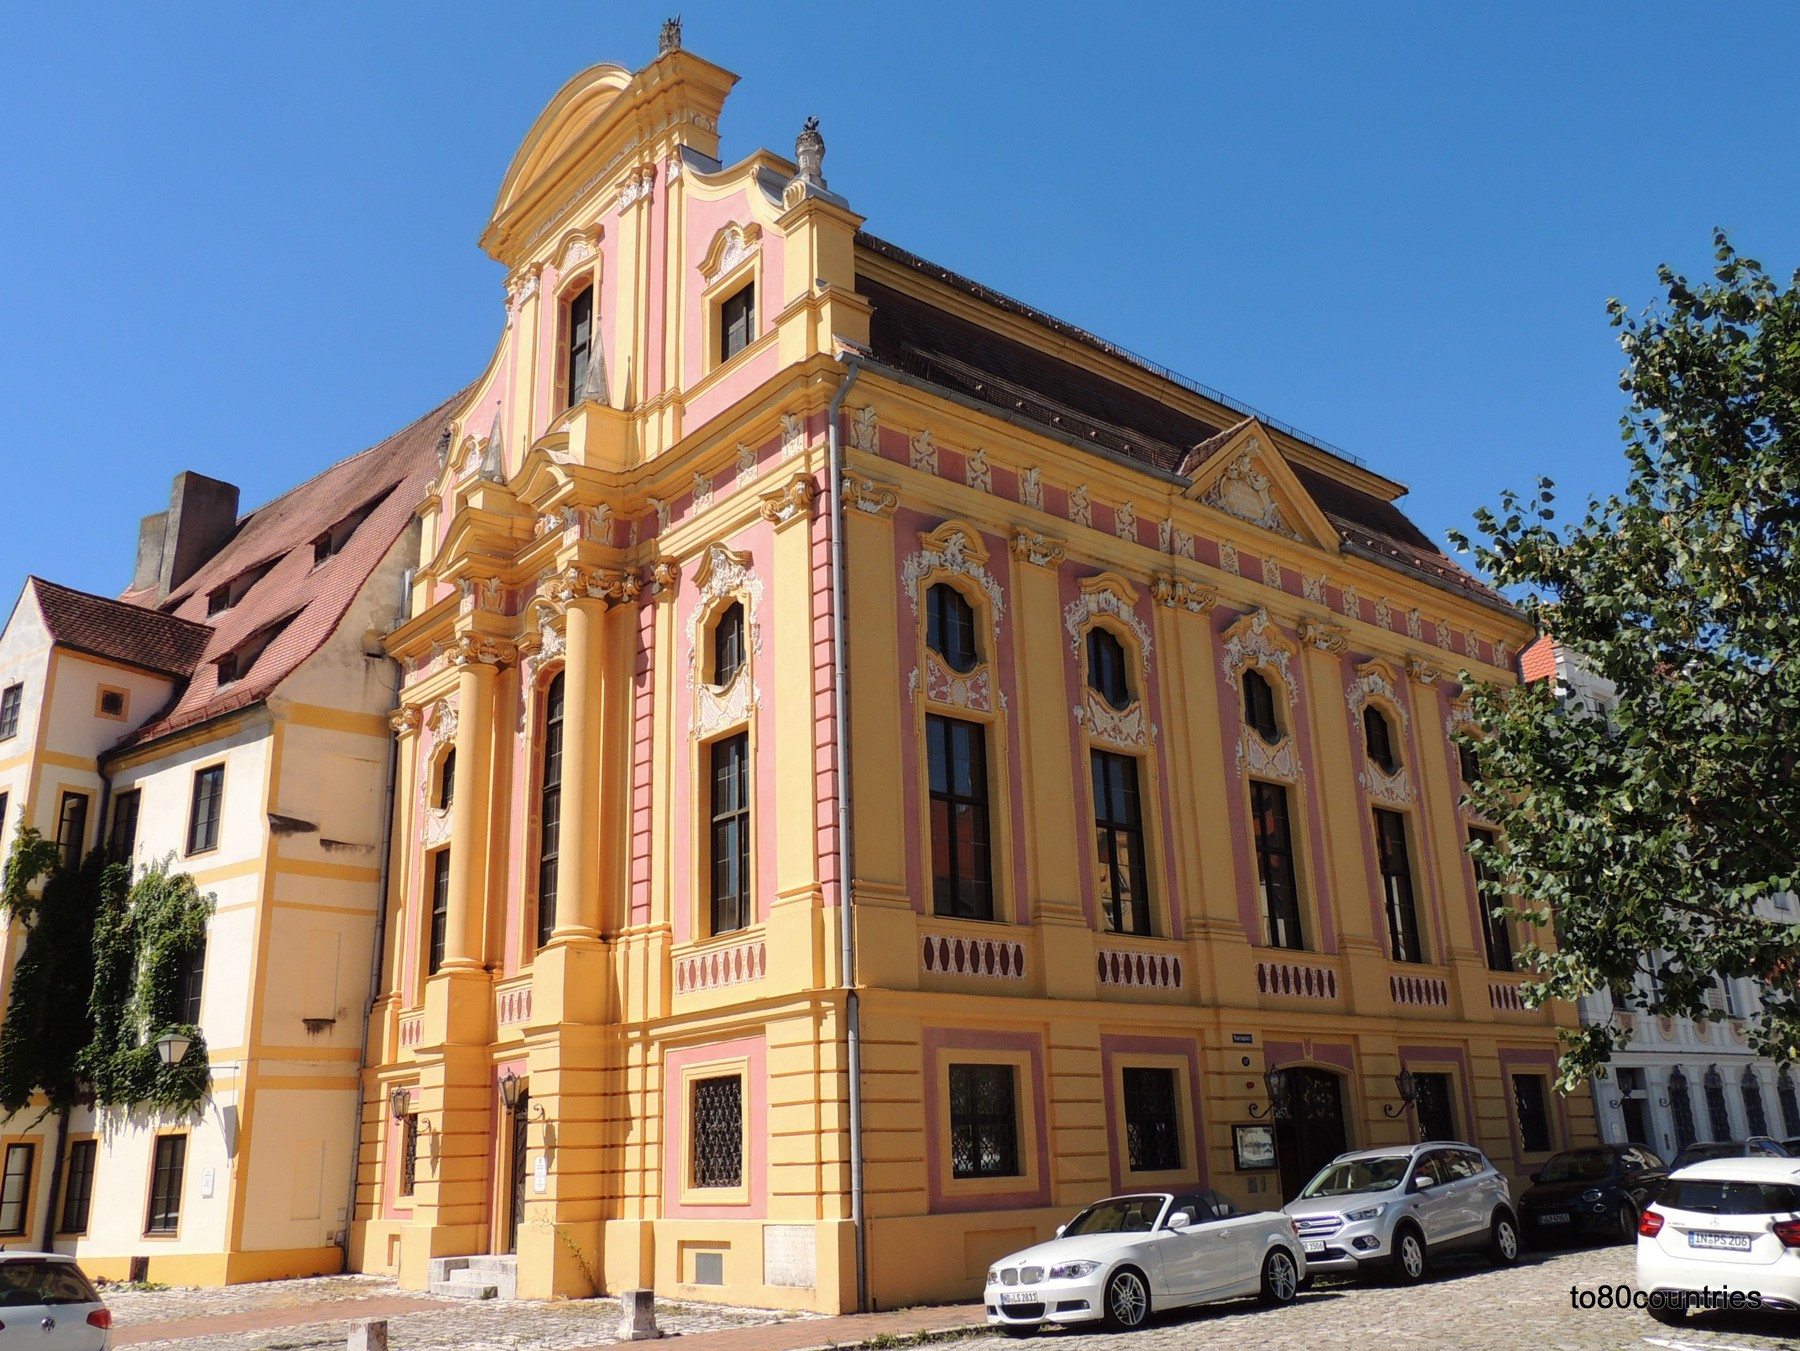 Staatlichen Bibliothek Neuburg an der Donau